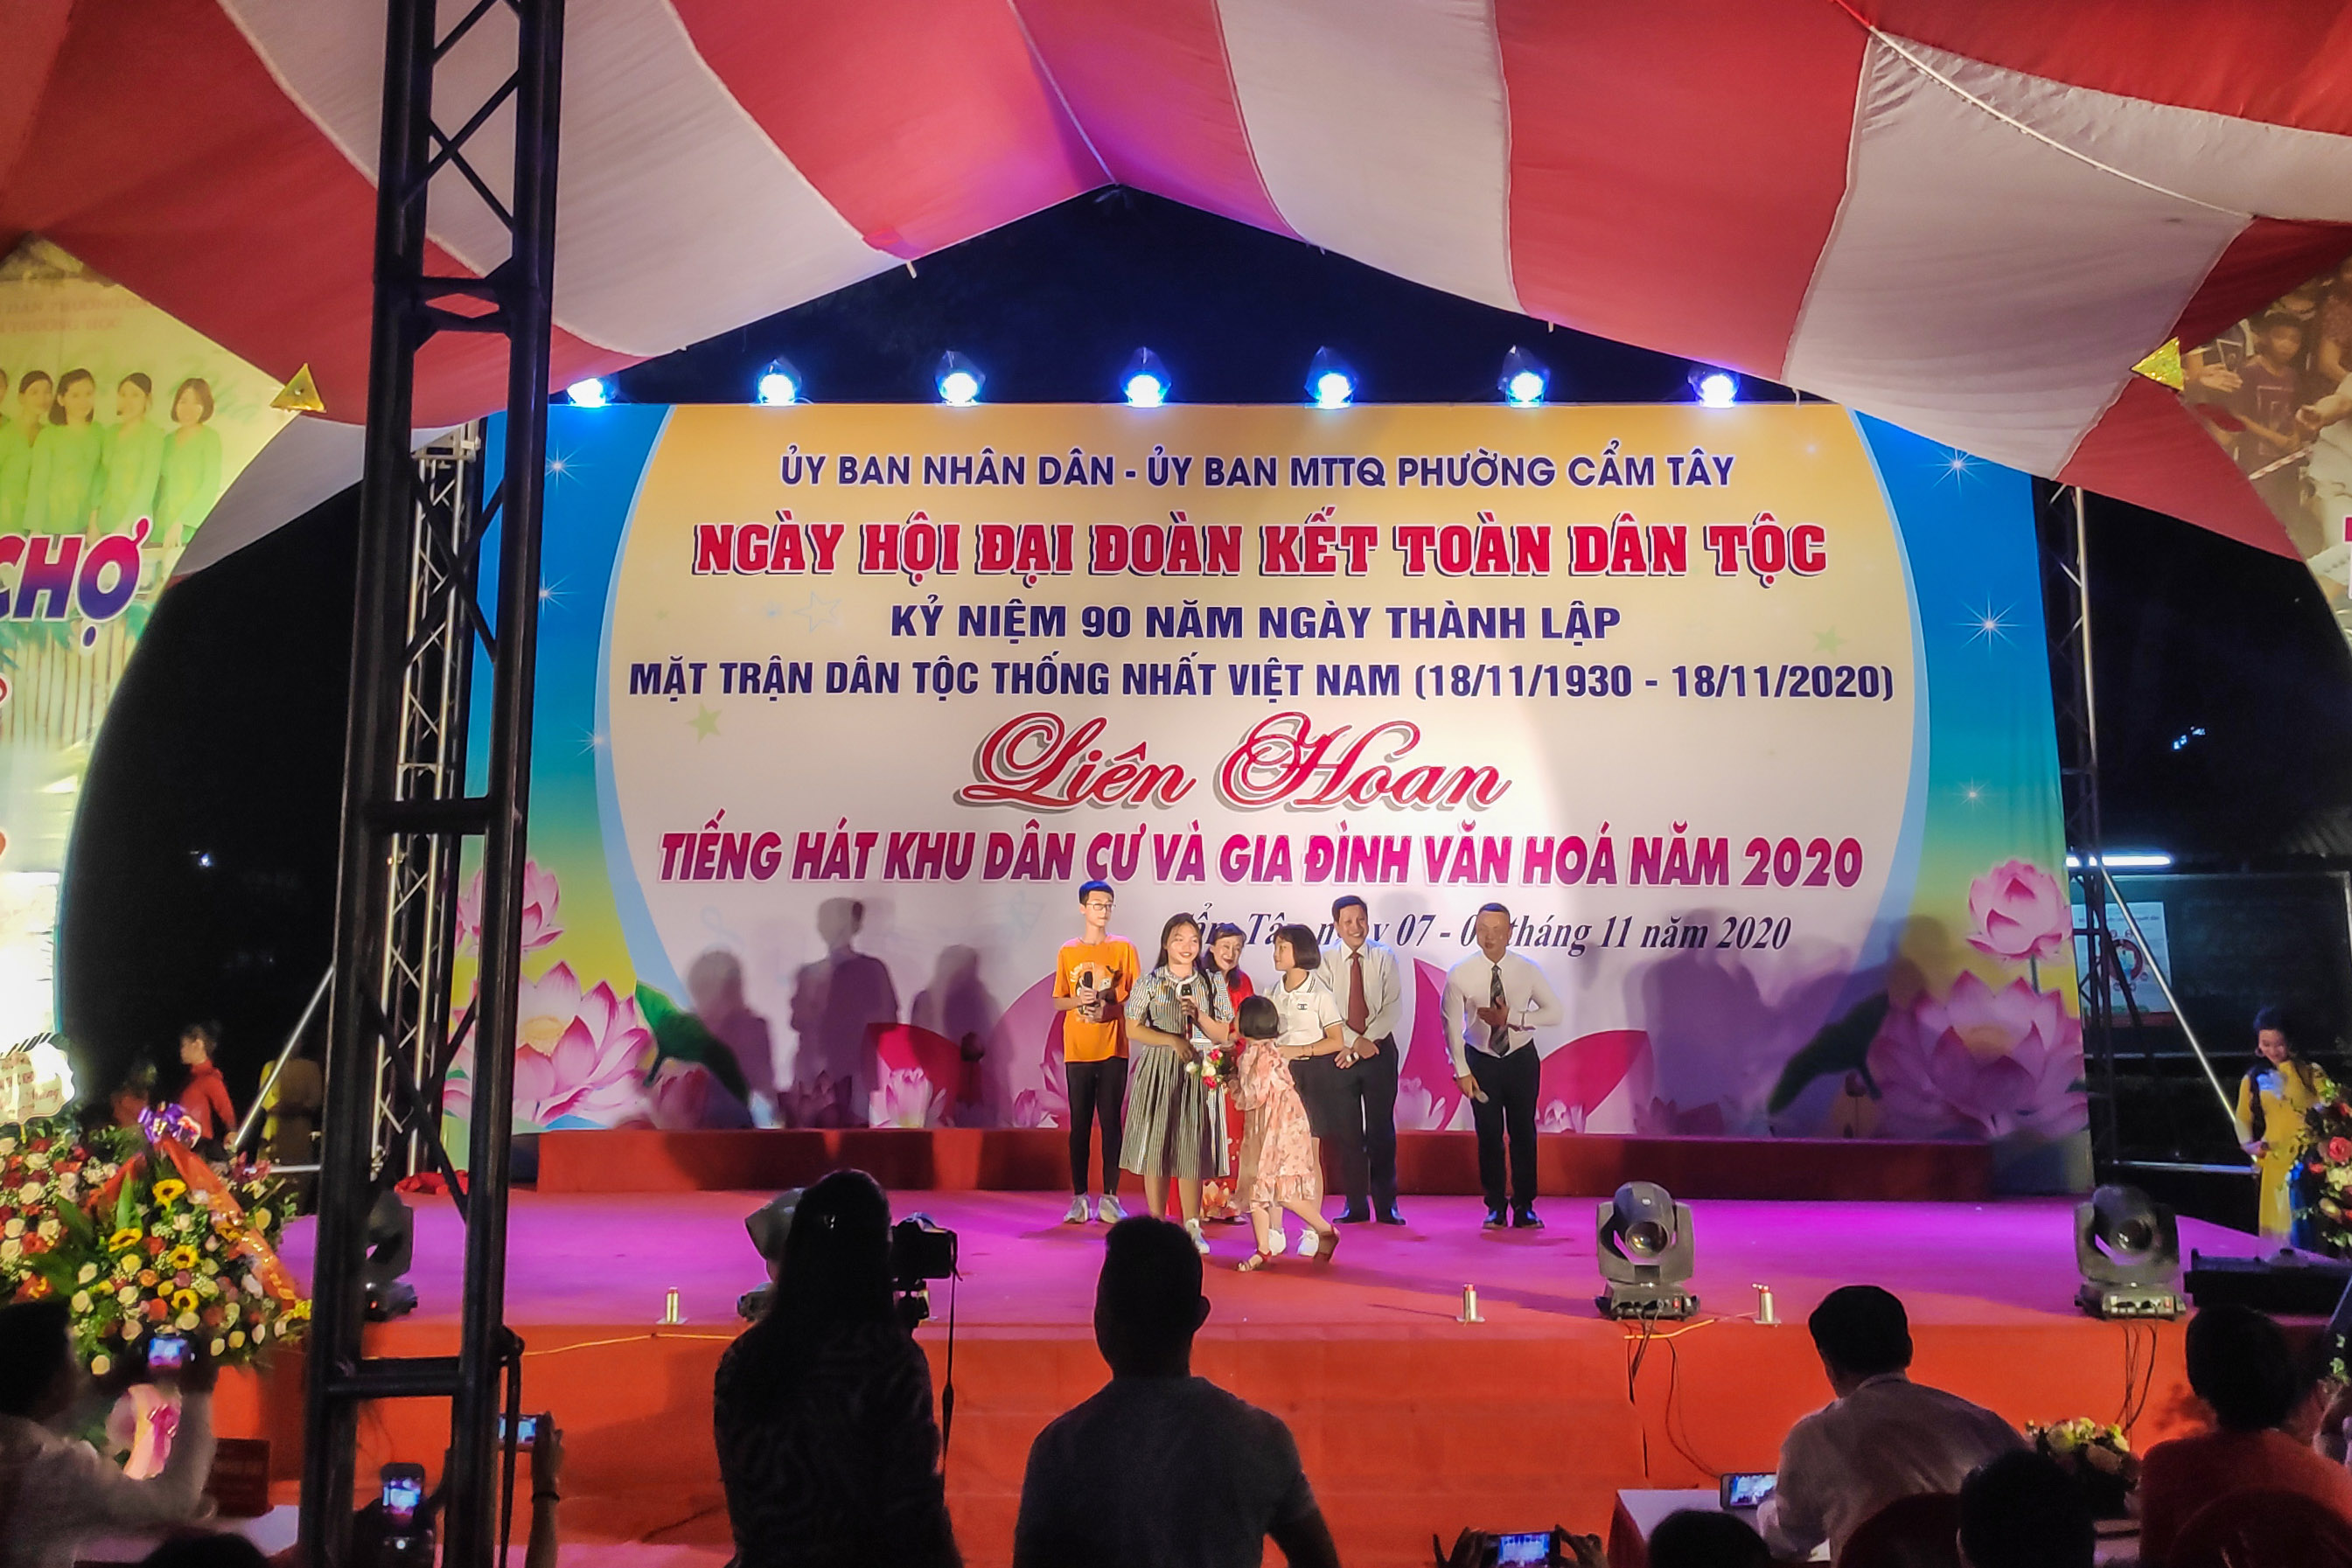 Nhân dân phường Cẩm Tây (TP Cẩm Phả) tham gia Liên hoan tiếng hát khu dân cư, nhân Ngày Hội đại đoàn kết toàn dân tháng 11/2020.